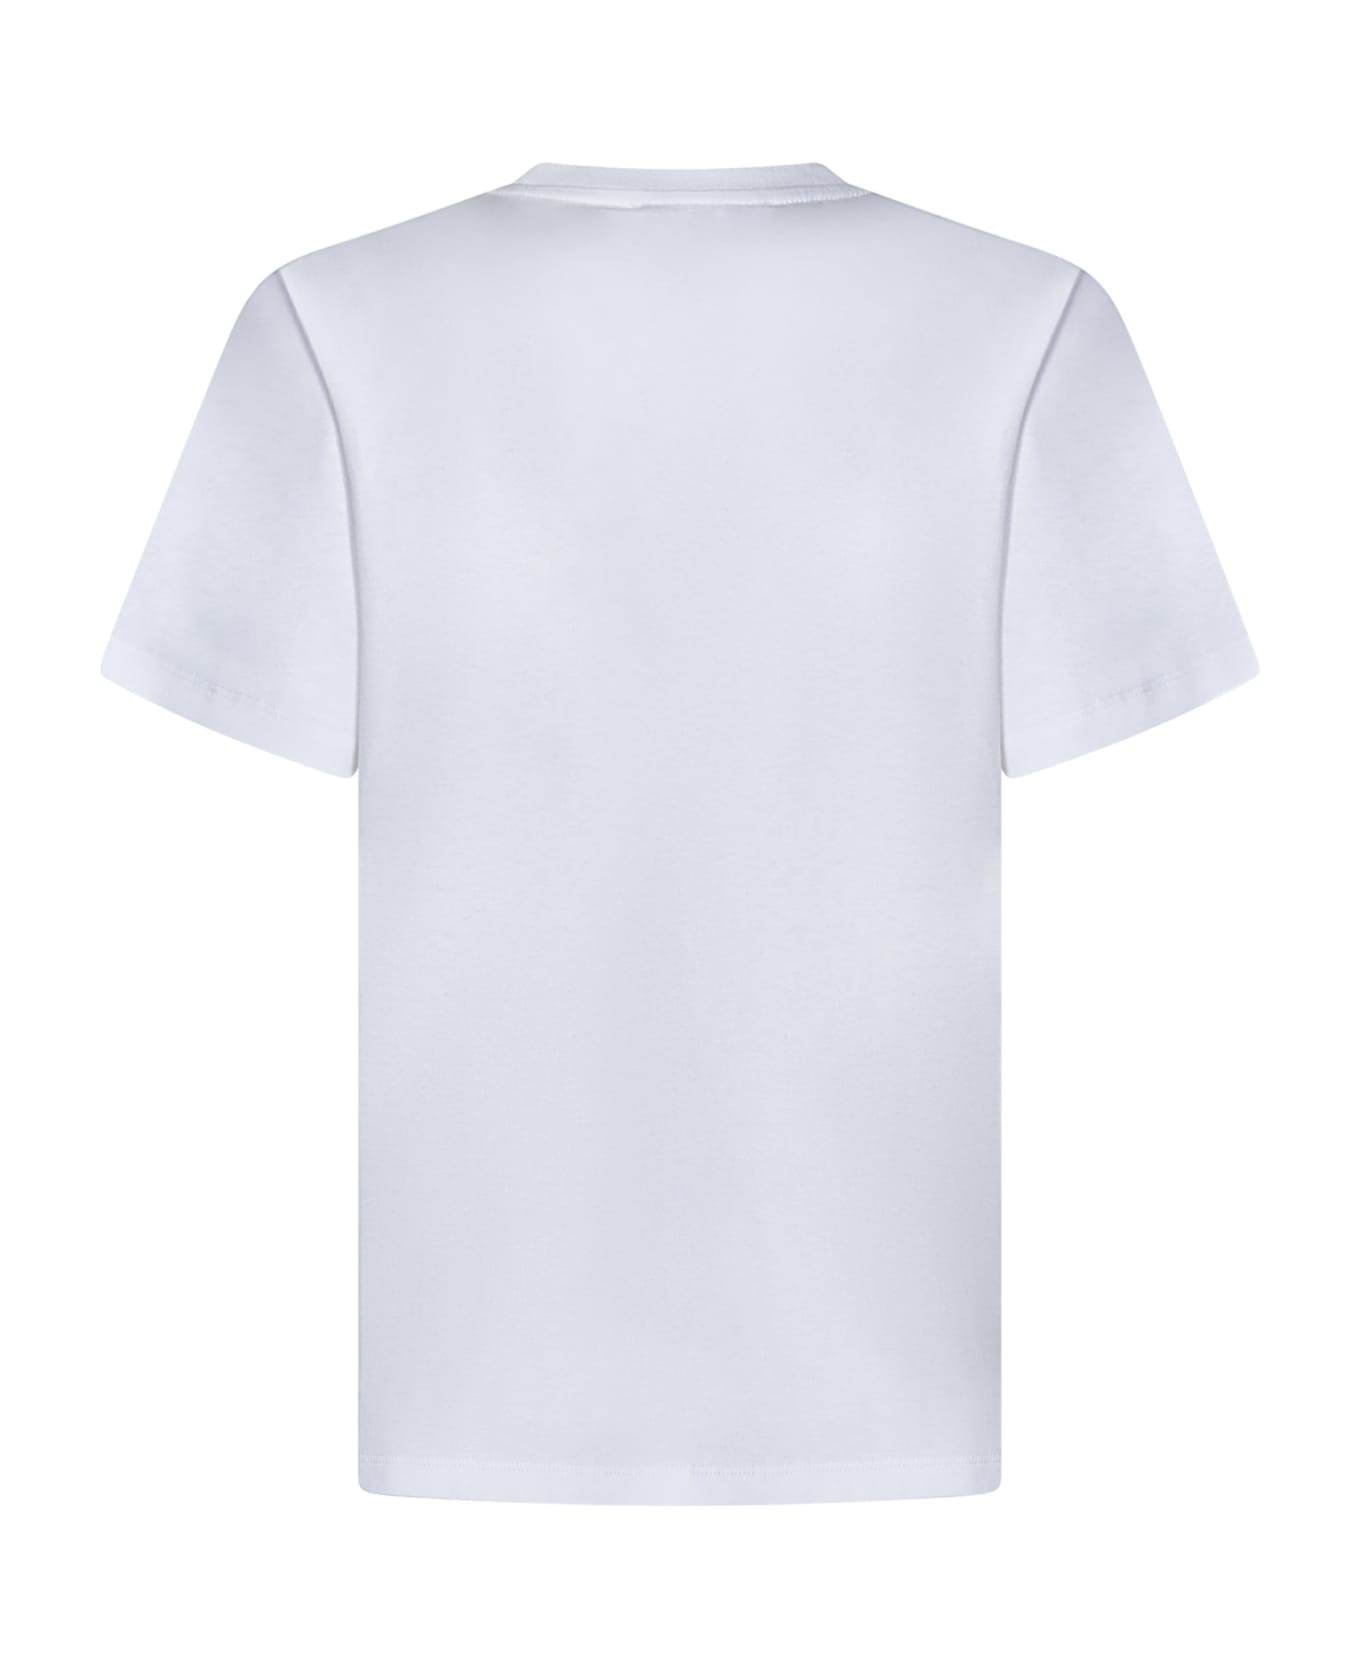 Coperni T-shirt - White Tシャツ